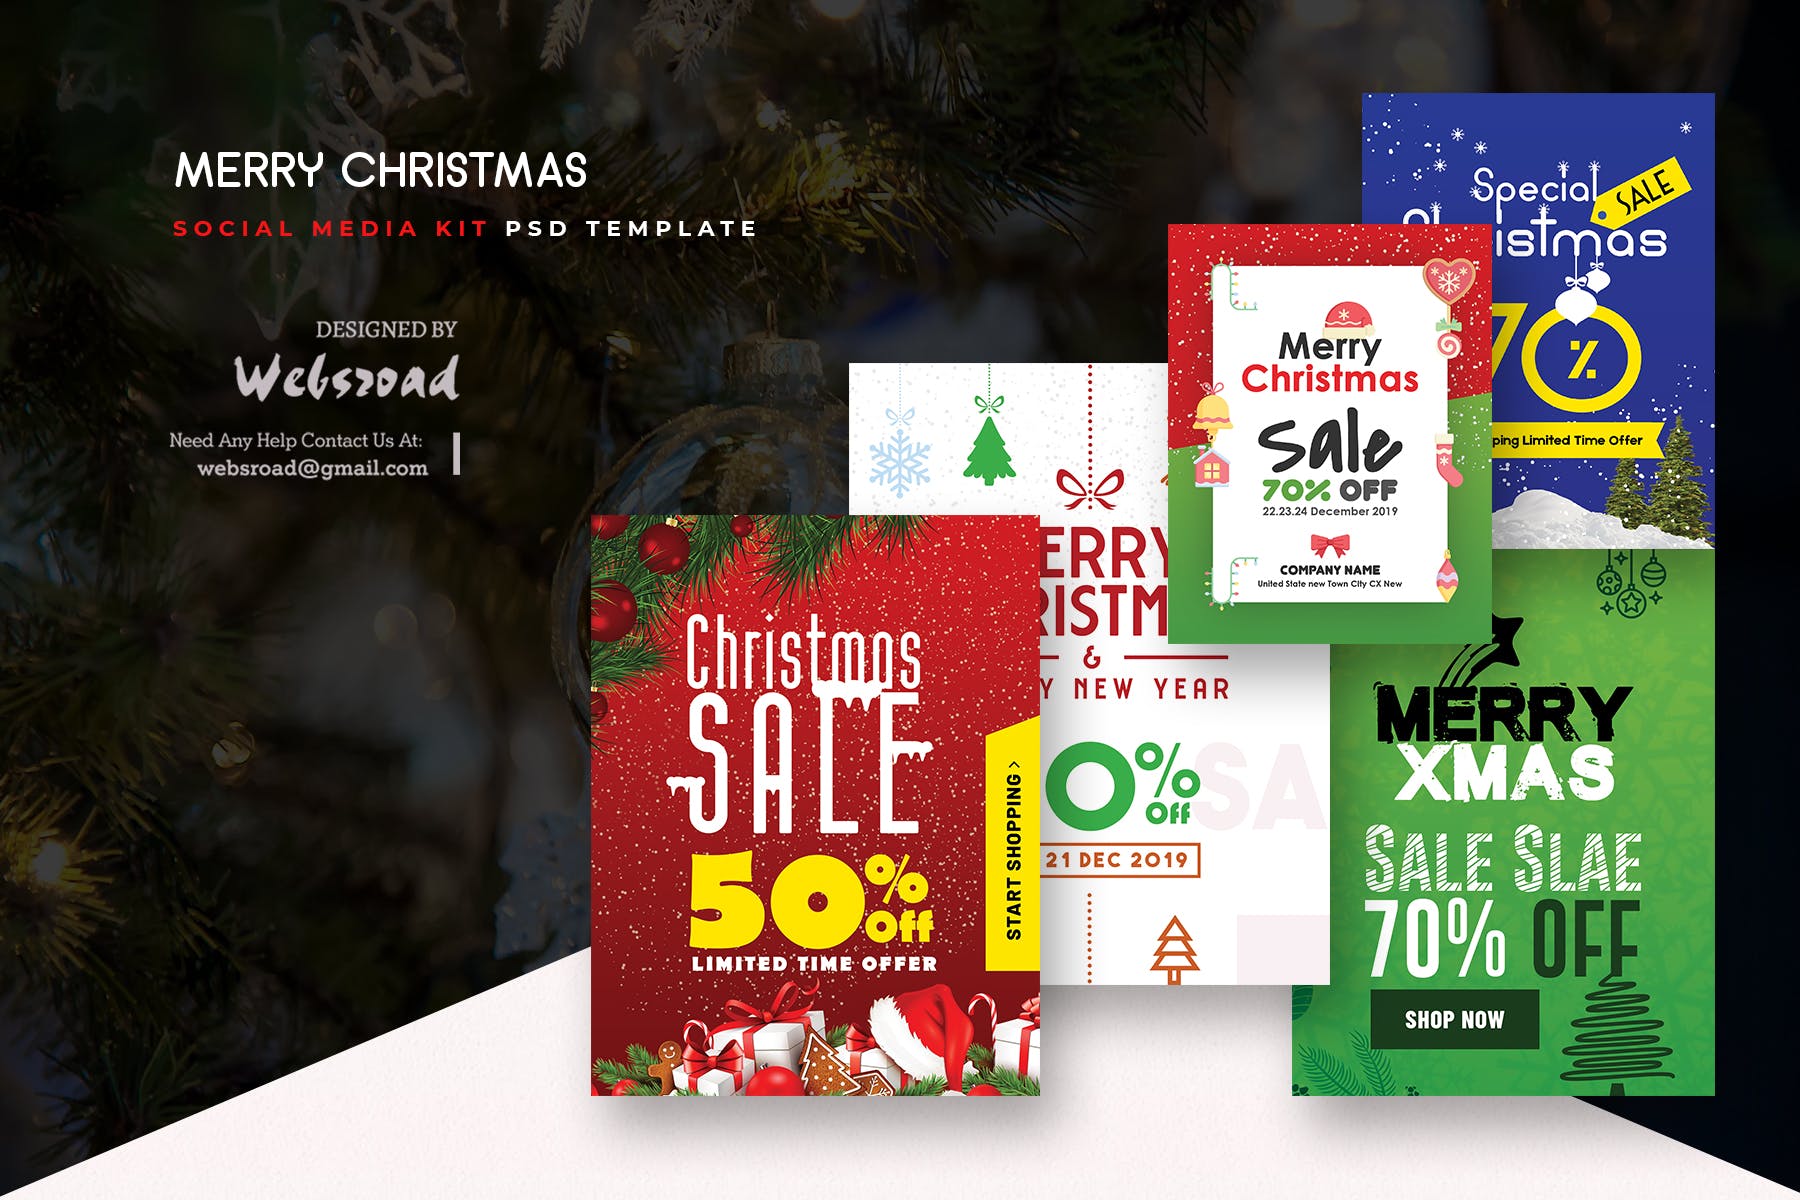 圣诞主题促销社交广告设计PSD模板素材中国精选 Merry Christmas Social Media Kit PSD Templates插图